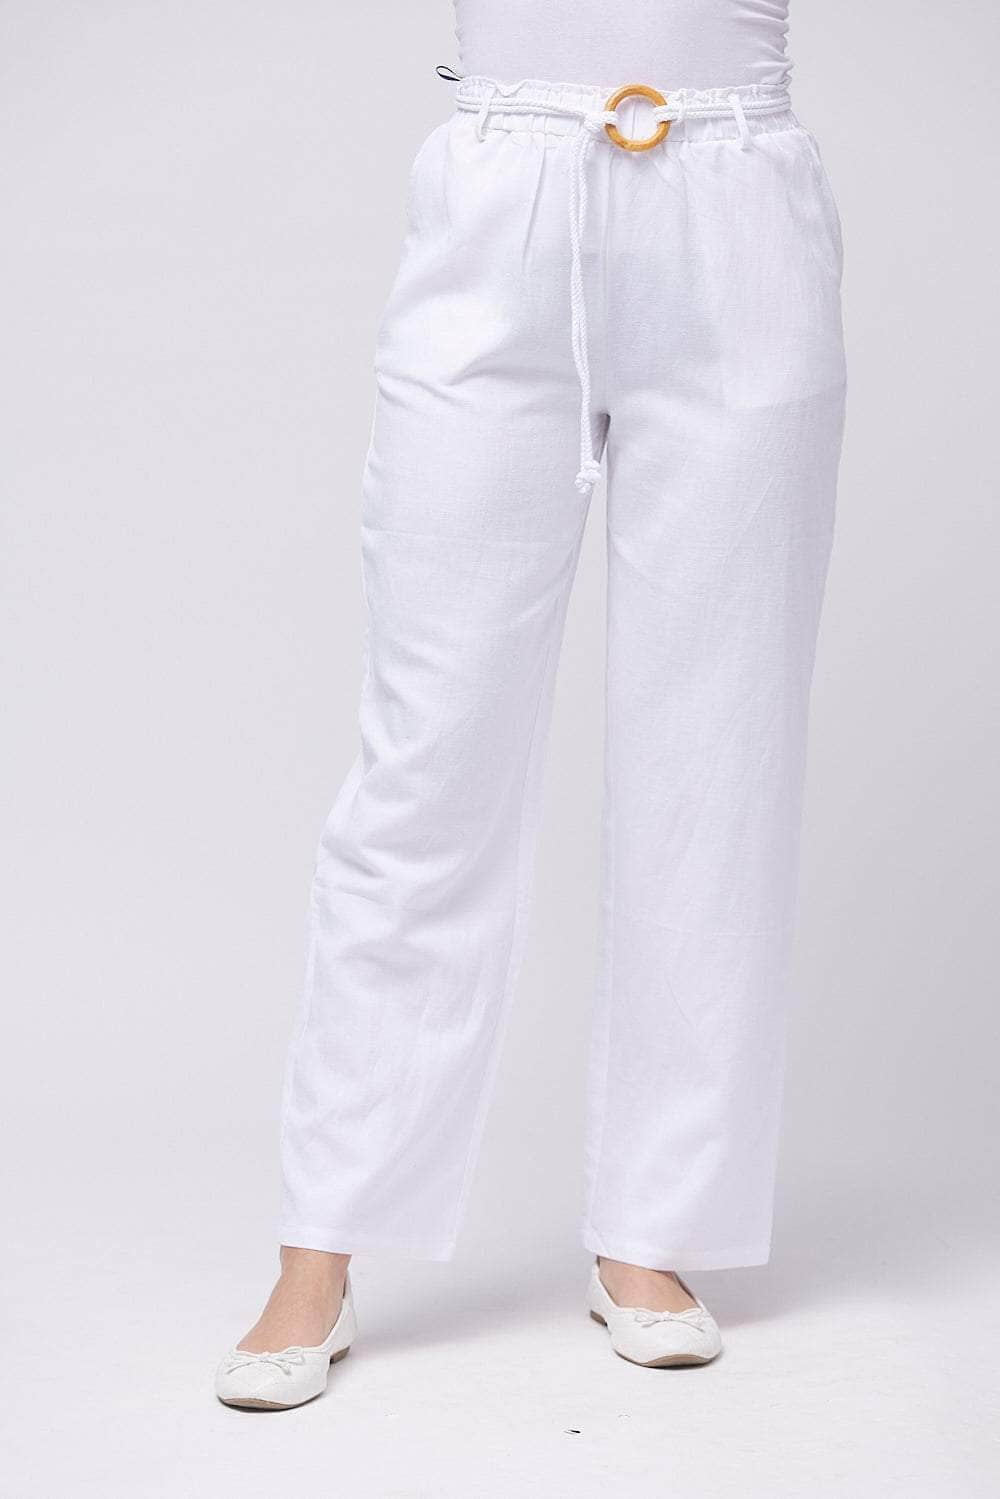 Saloos Trousers White / UK: 10 - EU: 36 - US: XS 7157-A